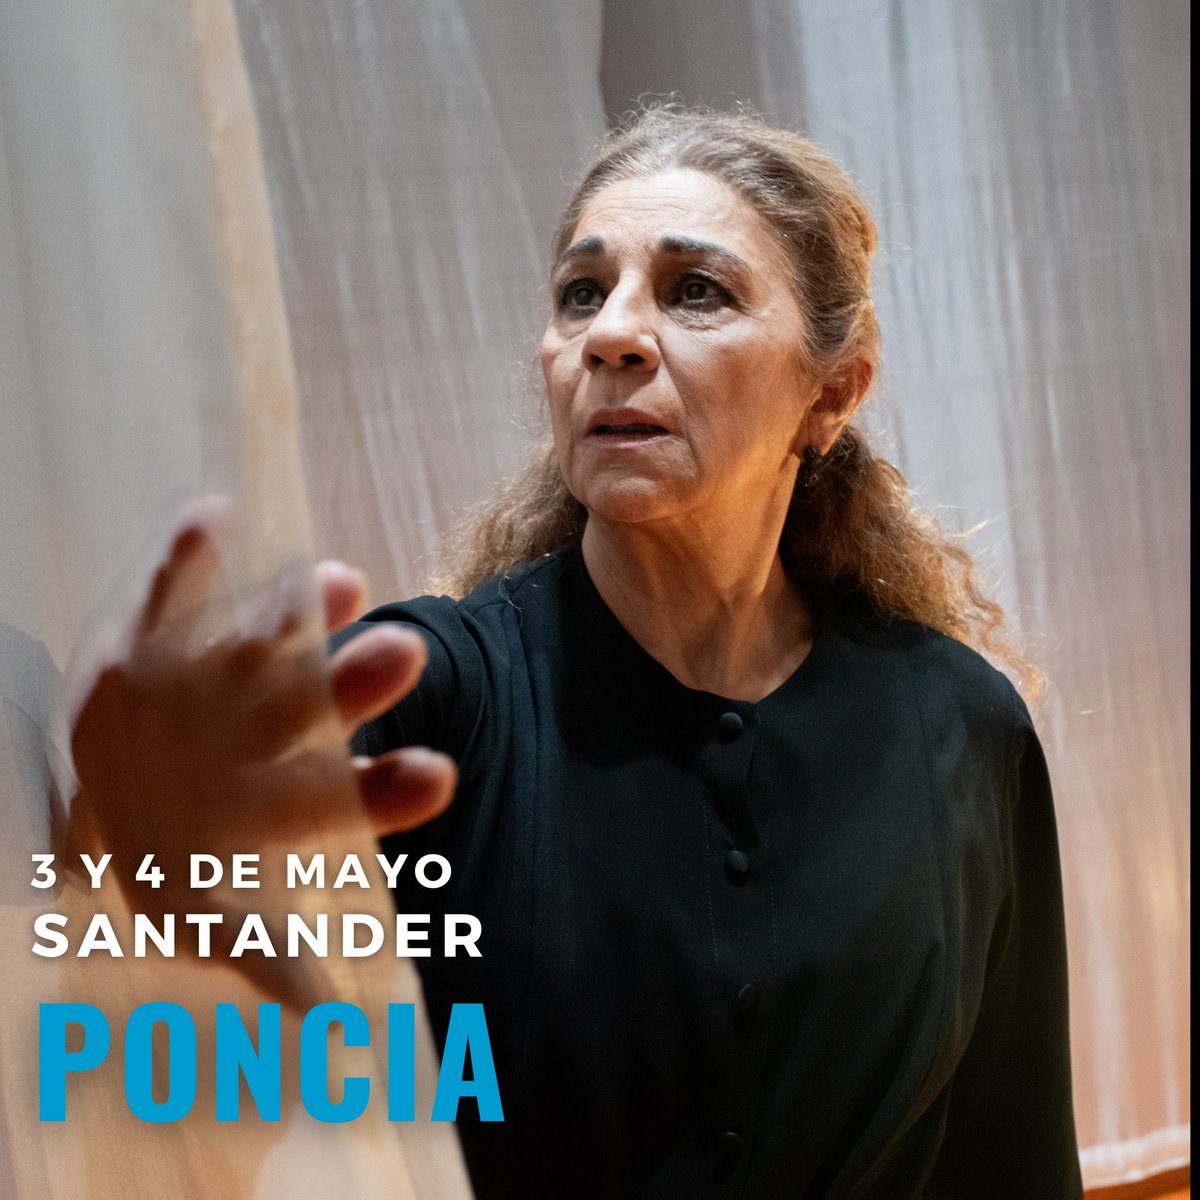 Los días 3 y 4 de mayo 🗓️,  @sarandonga55 y su  #Poncia llegan al @PFCantabria de #Santander 📌

Una obra escrita y dirigida por #LuisLuque a partir de #LaCasaDeBernardaAlba de #Lorca 🌹

#Santander, ¡os esperamos en el teatro!🎭

@JCimarro